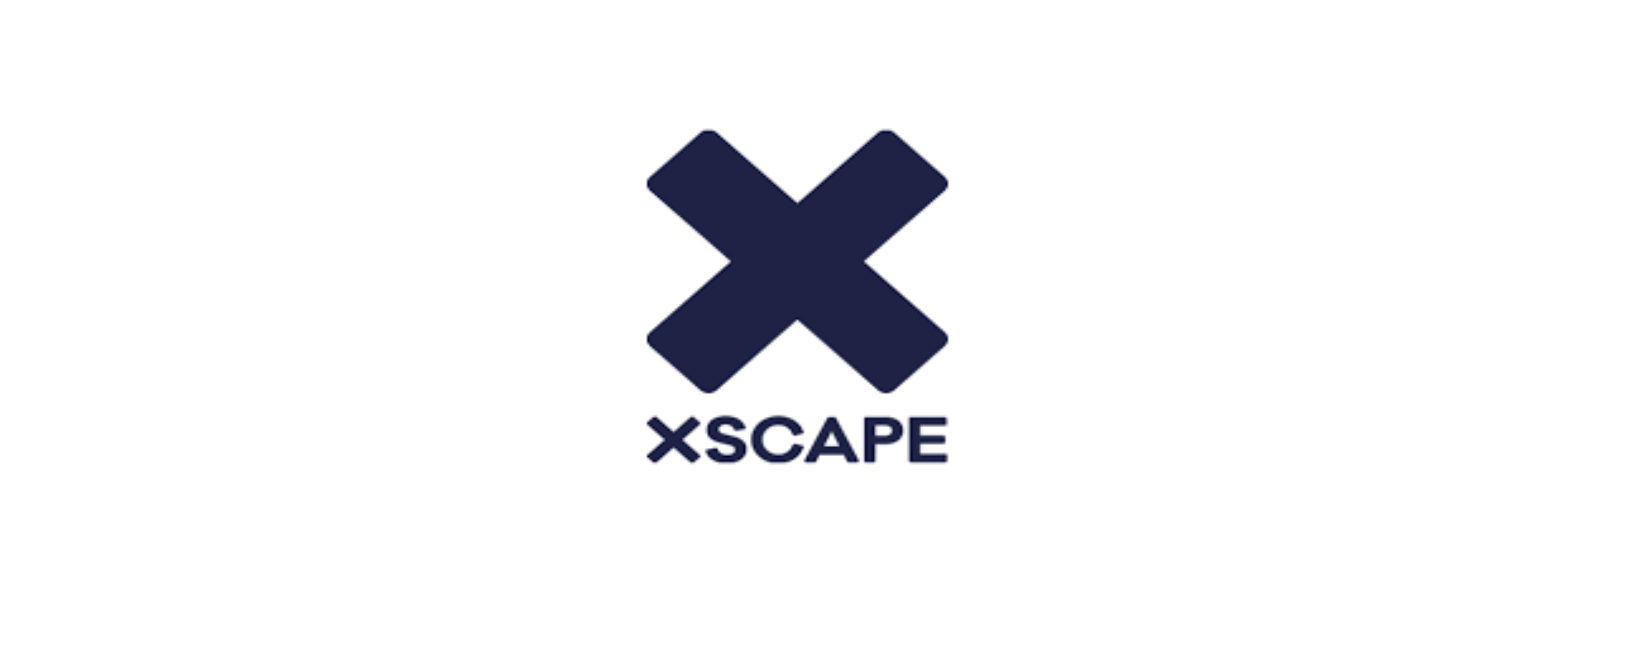 X5CAPE UK Discount Code 2022